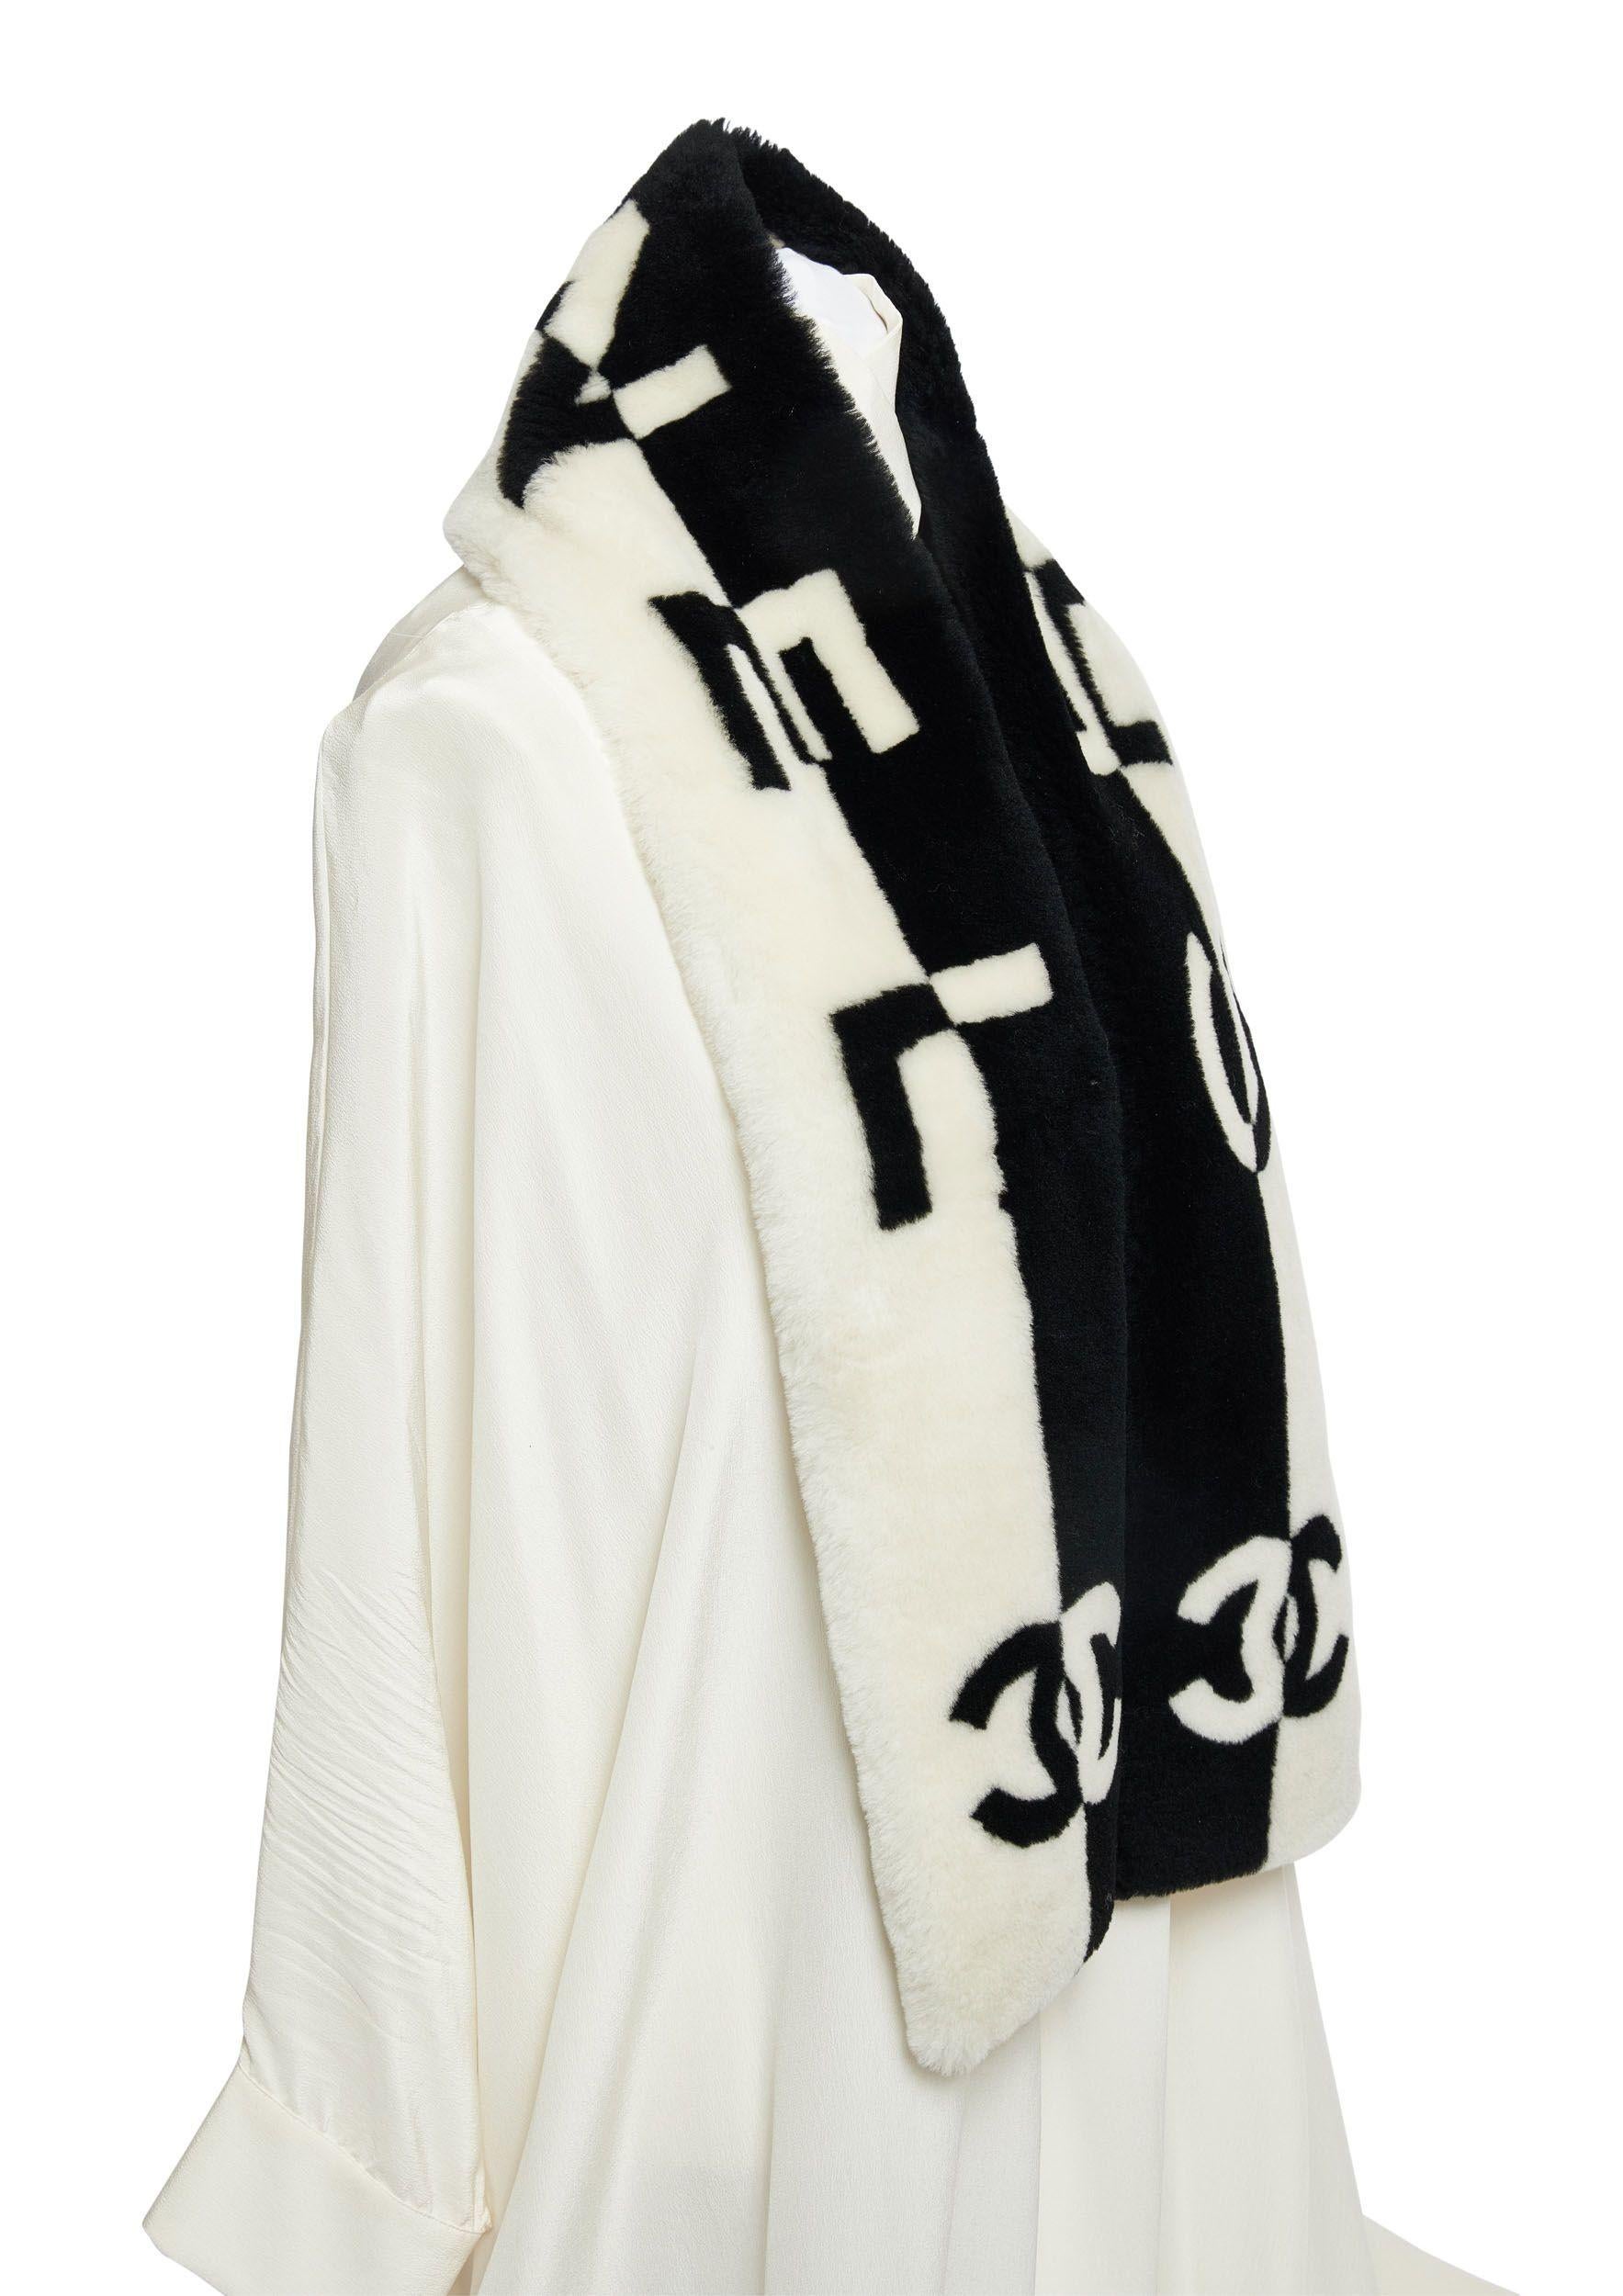 Nouvelle écharpe en peau de mouton noire et blanche de Chanel avec les lettres Chanel et le logo CC en contraste noir et blanc.
Doublure en cachemire.